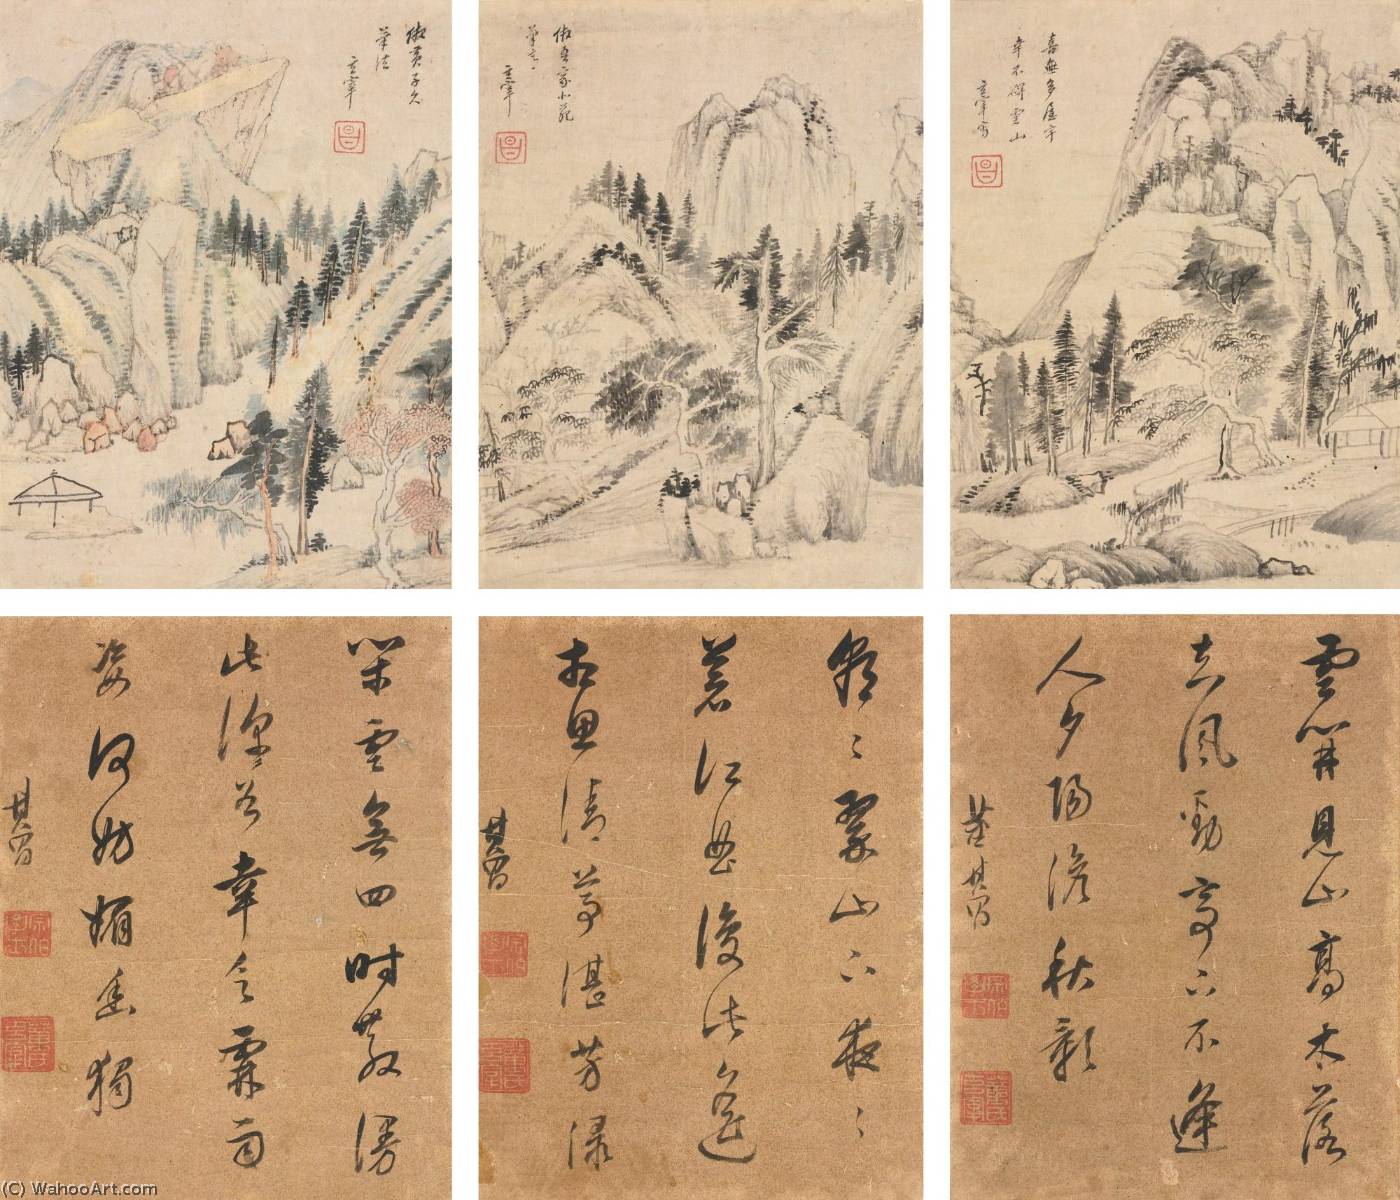 WikiOO.org - אנציקלופדיה לאמנויות יפות - ציור, יצירות אמנות Dong Qichang - LANDSCAPE AND CALLIGRAPHY